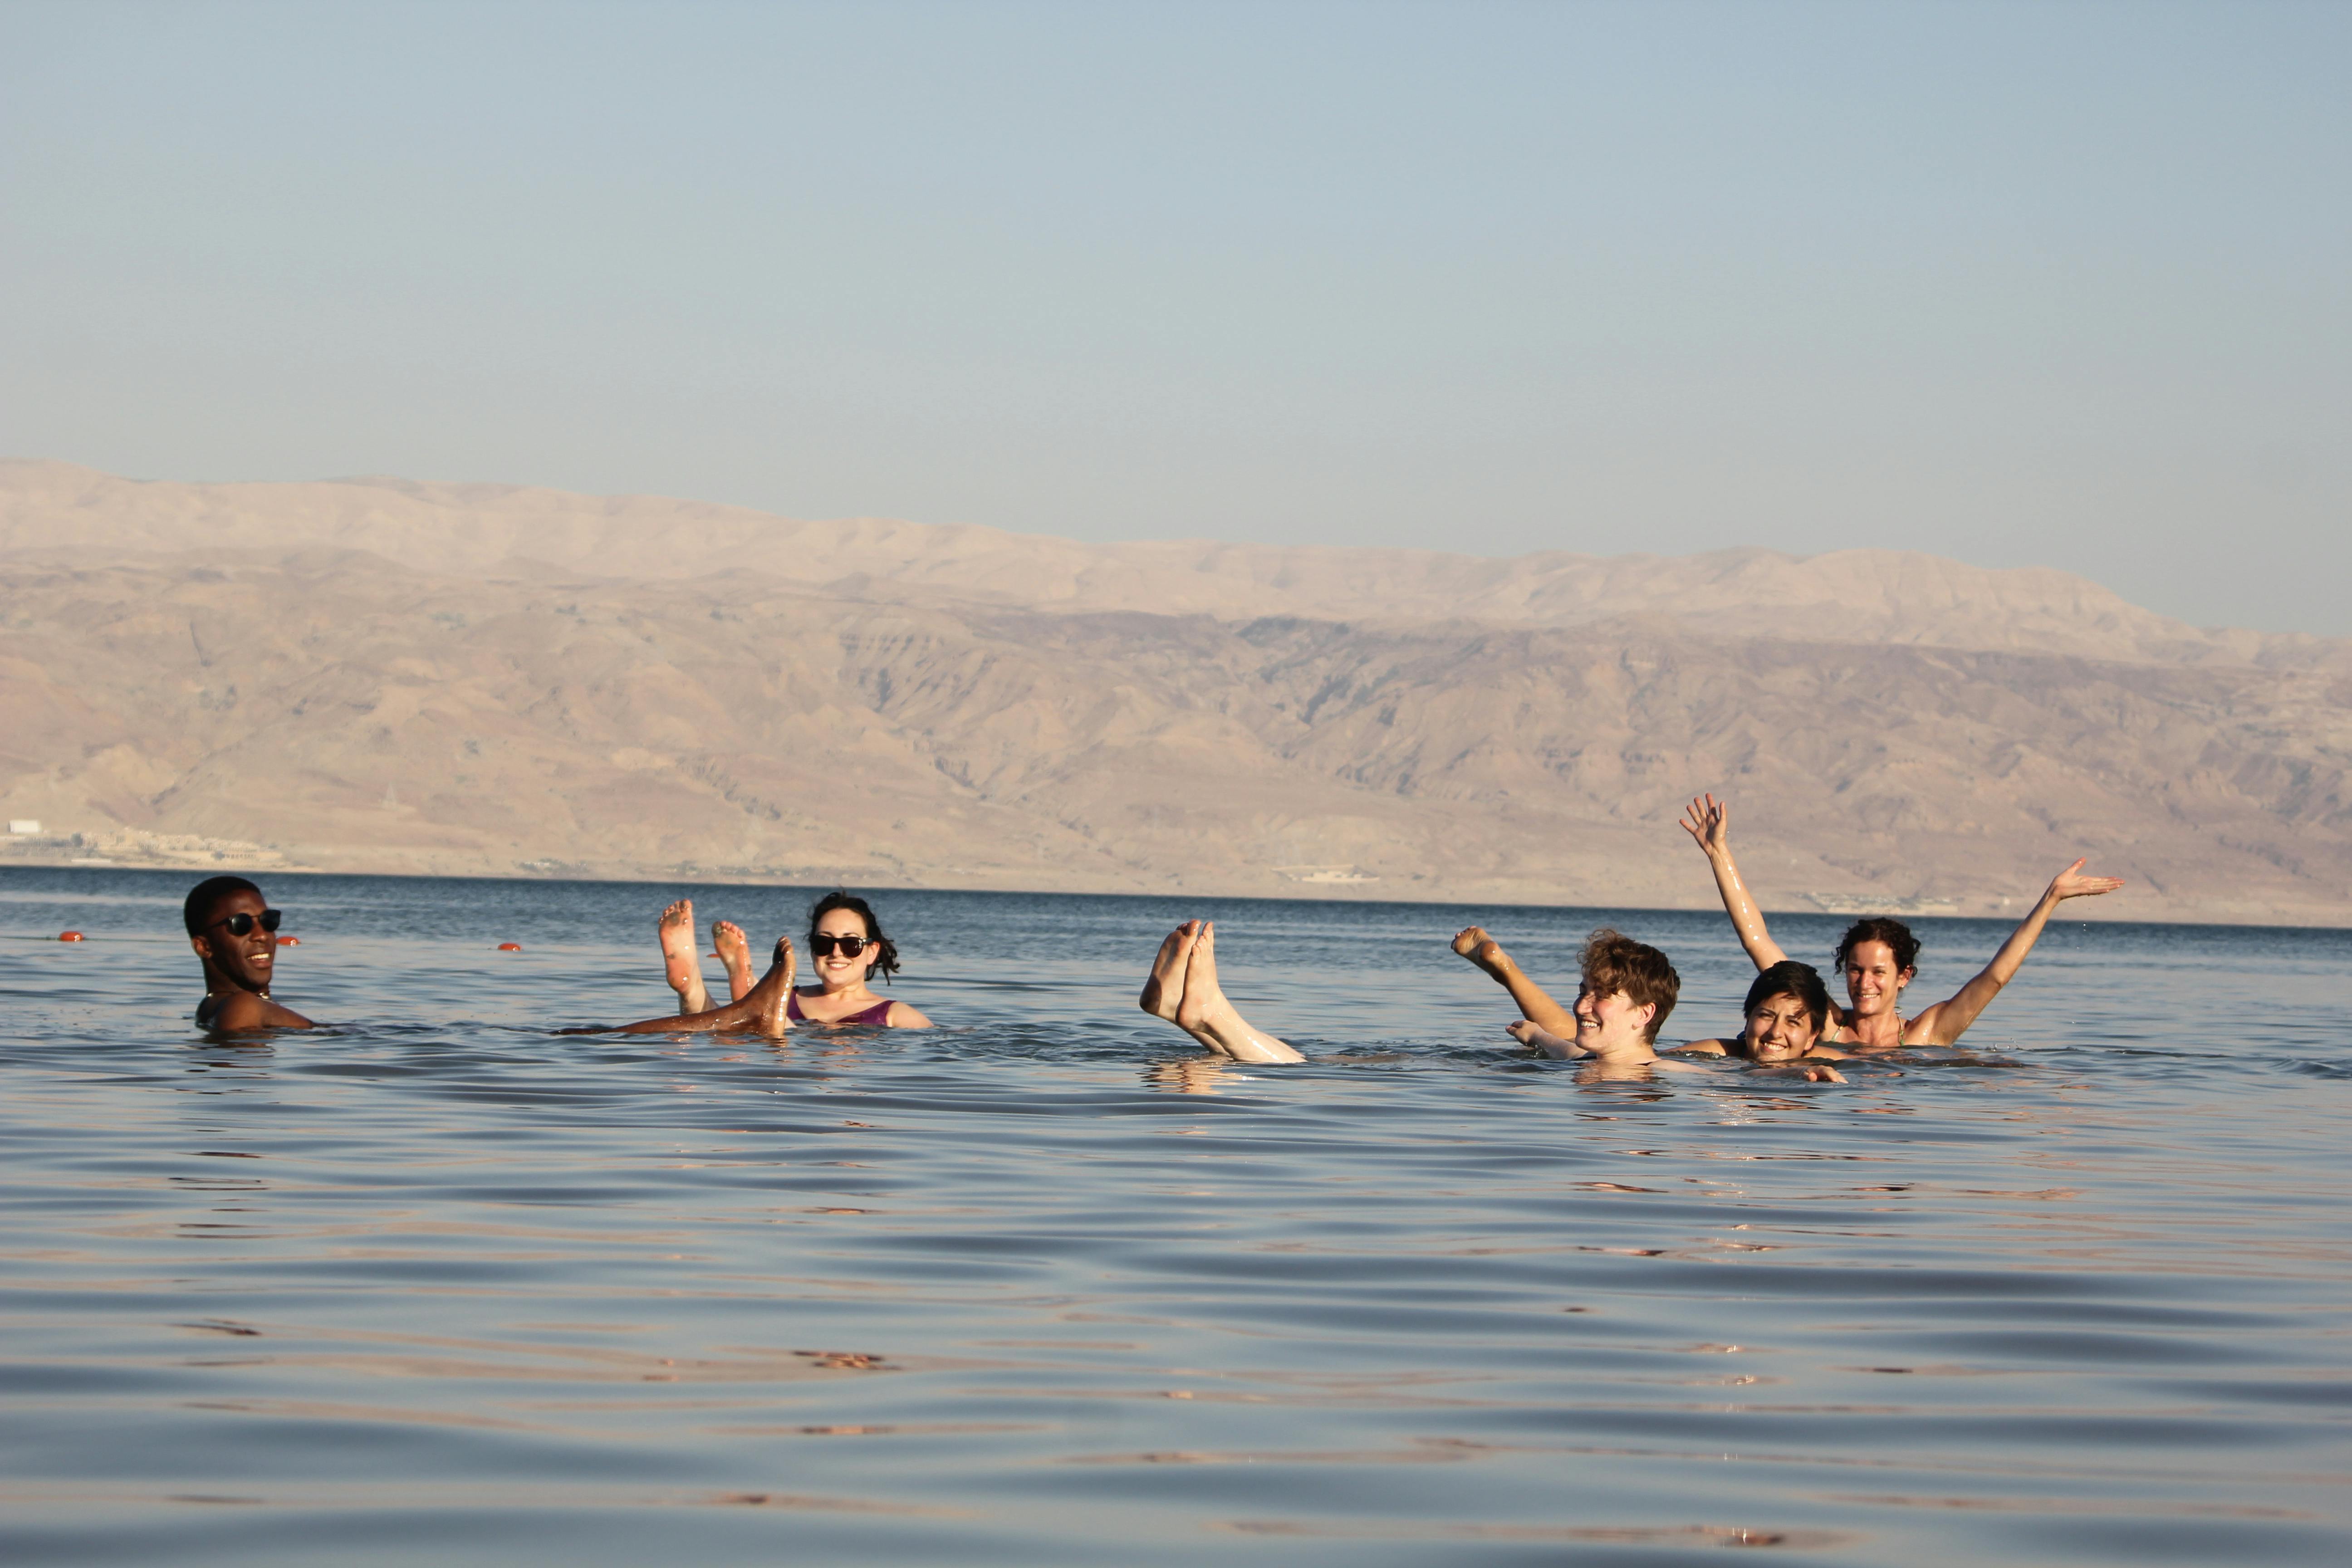 Tour di Masada, Ein Gedi e Mar Morto da Tel Aviv